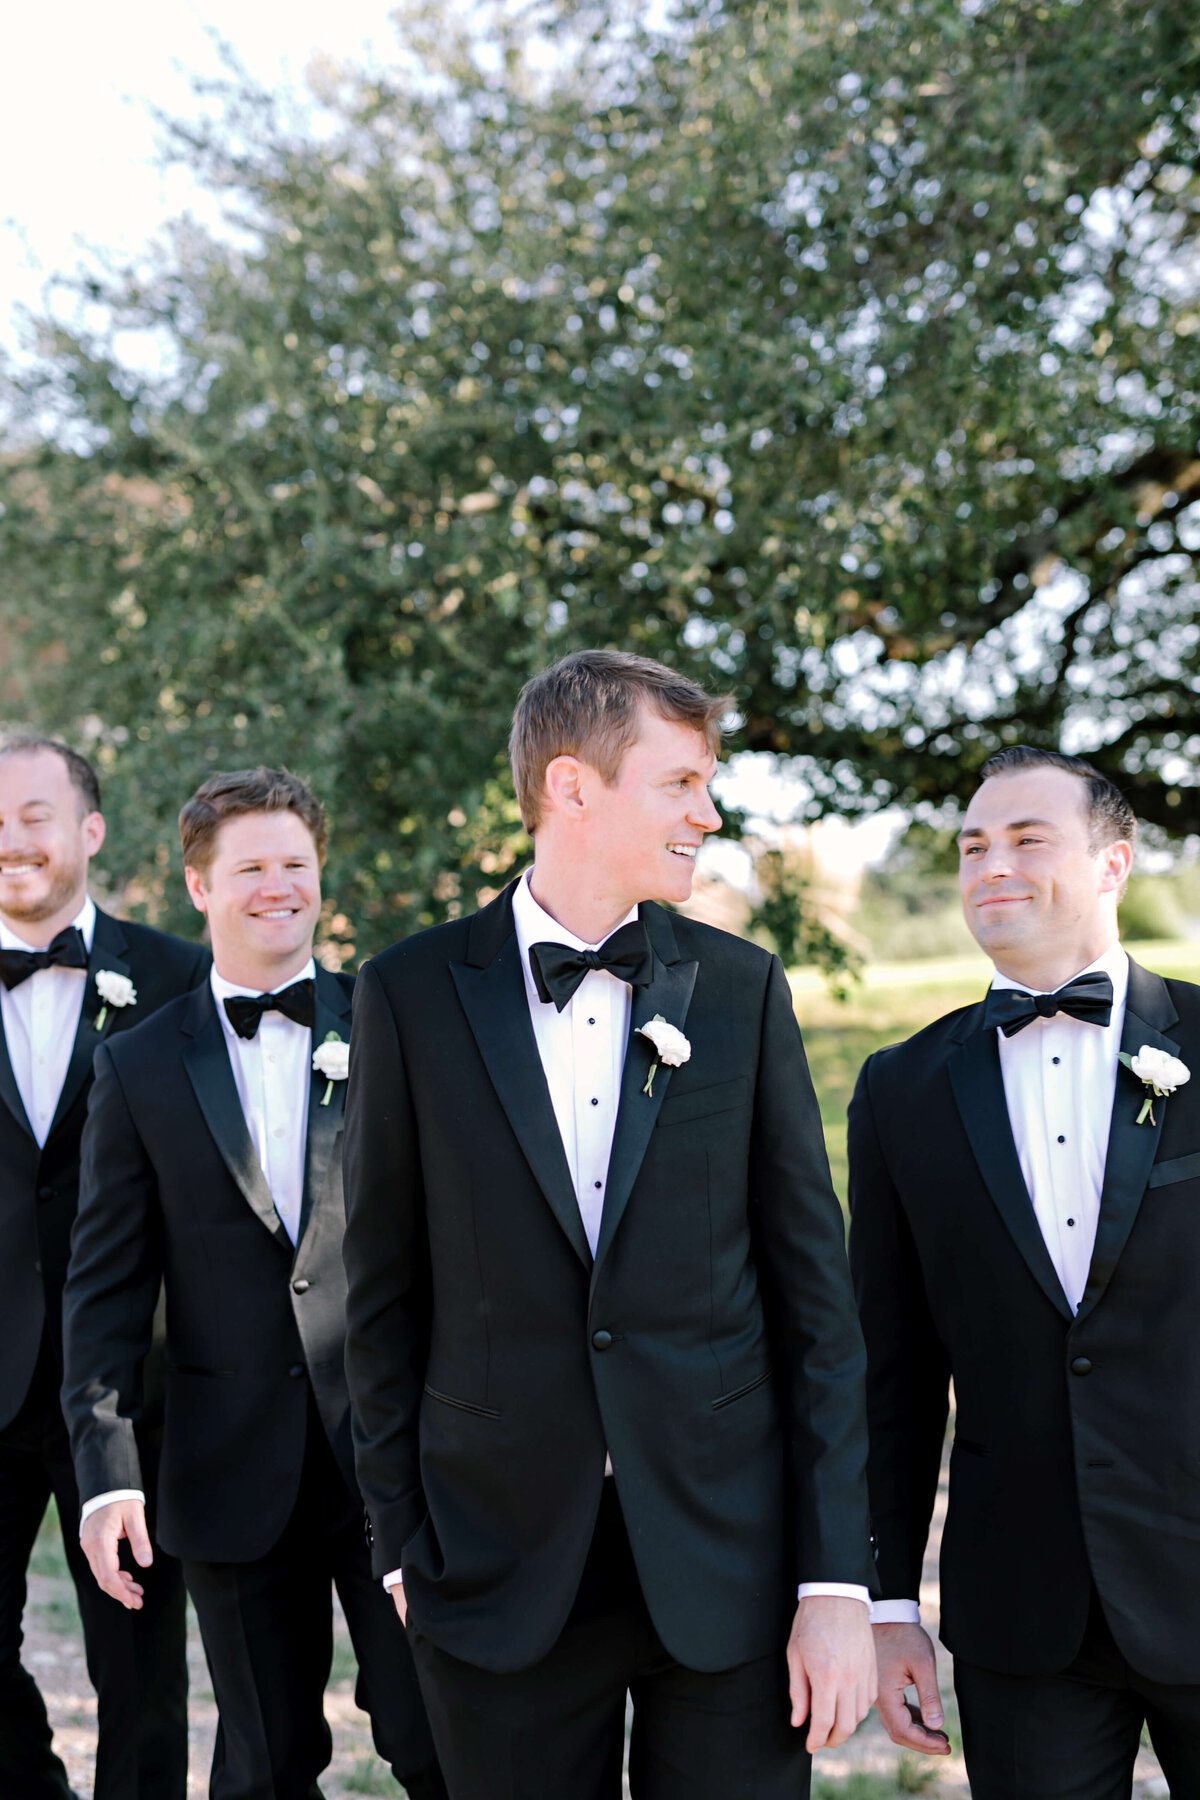 Black tie groomsmen attire